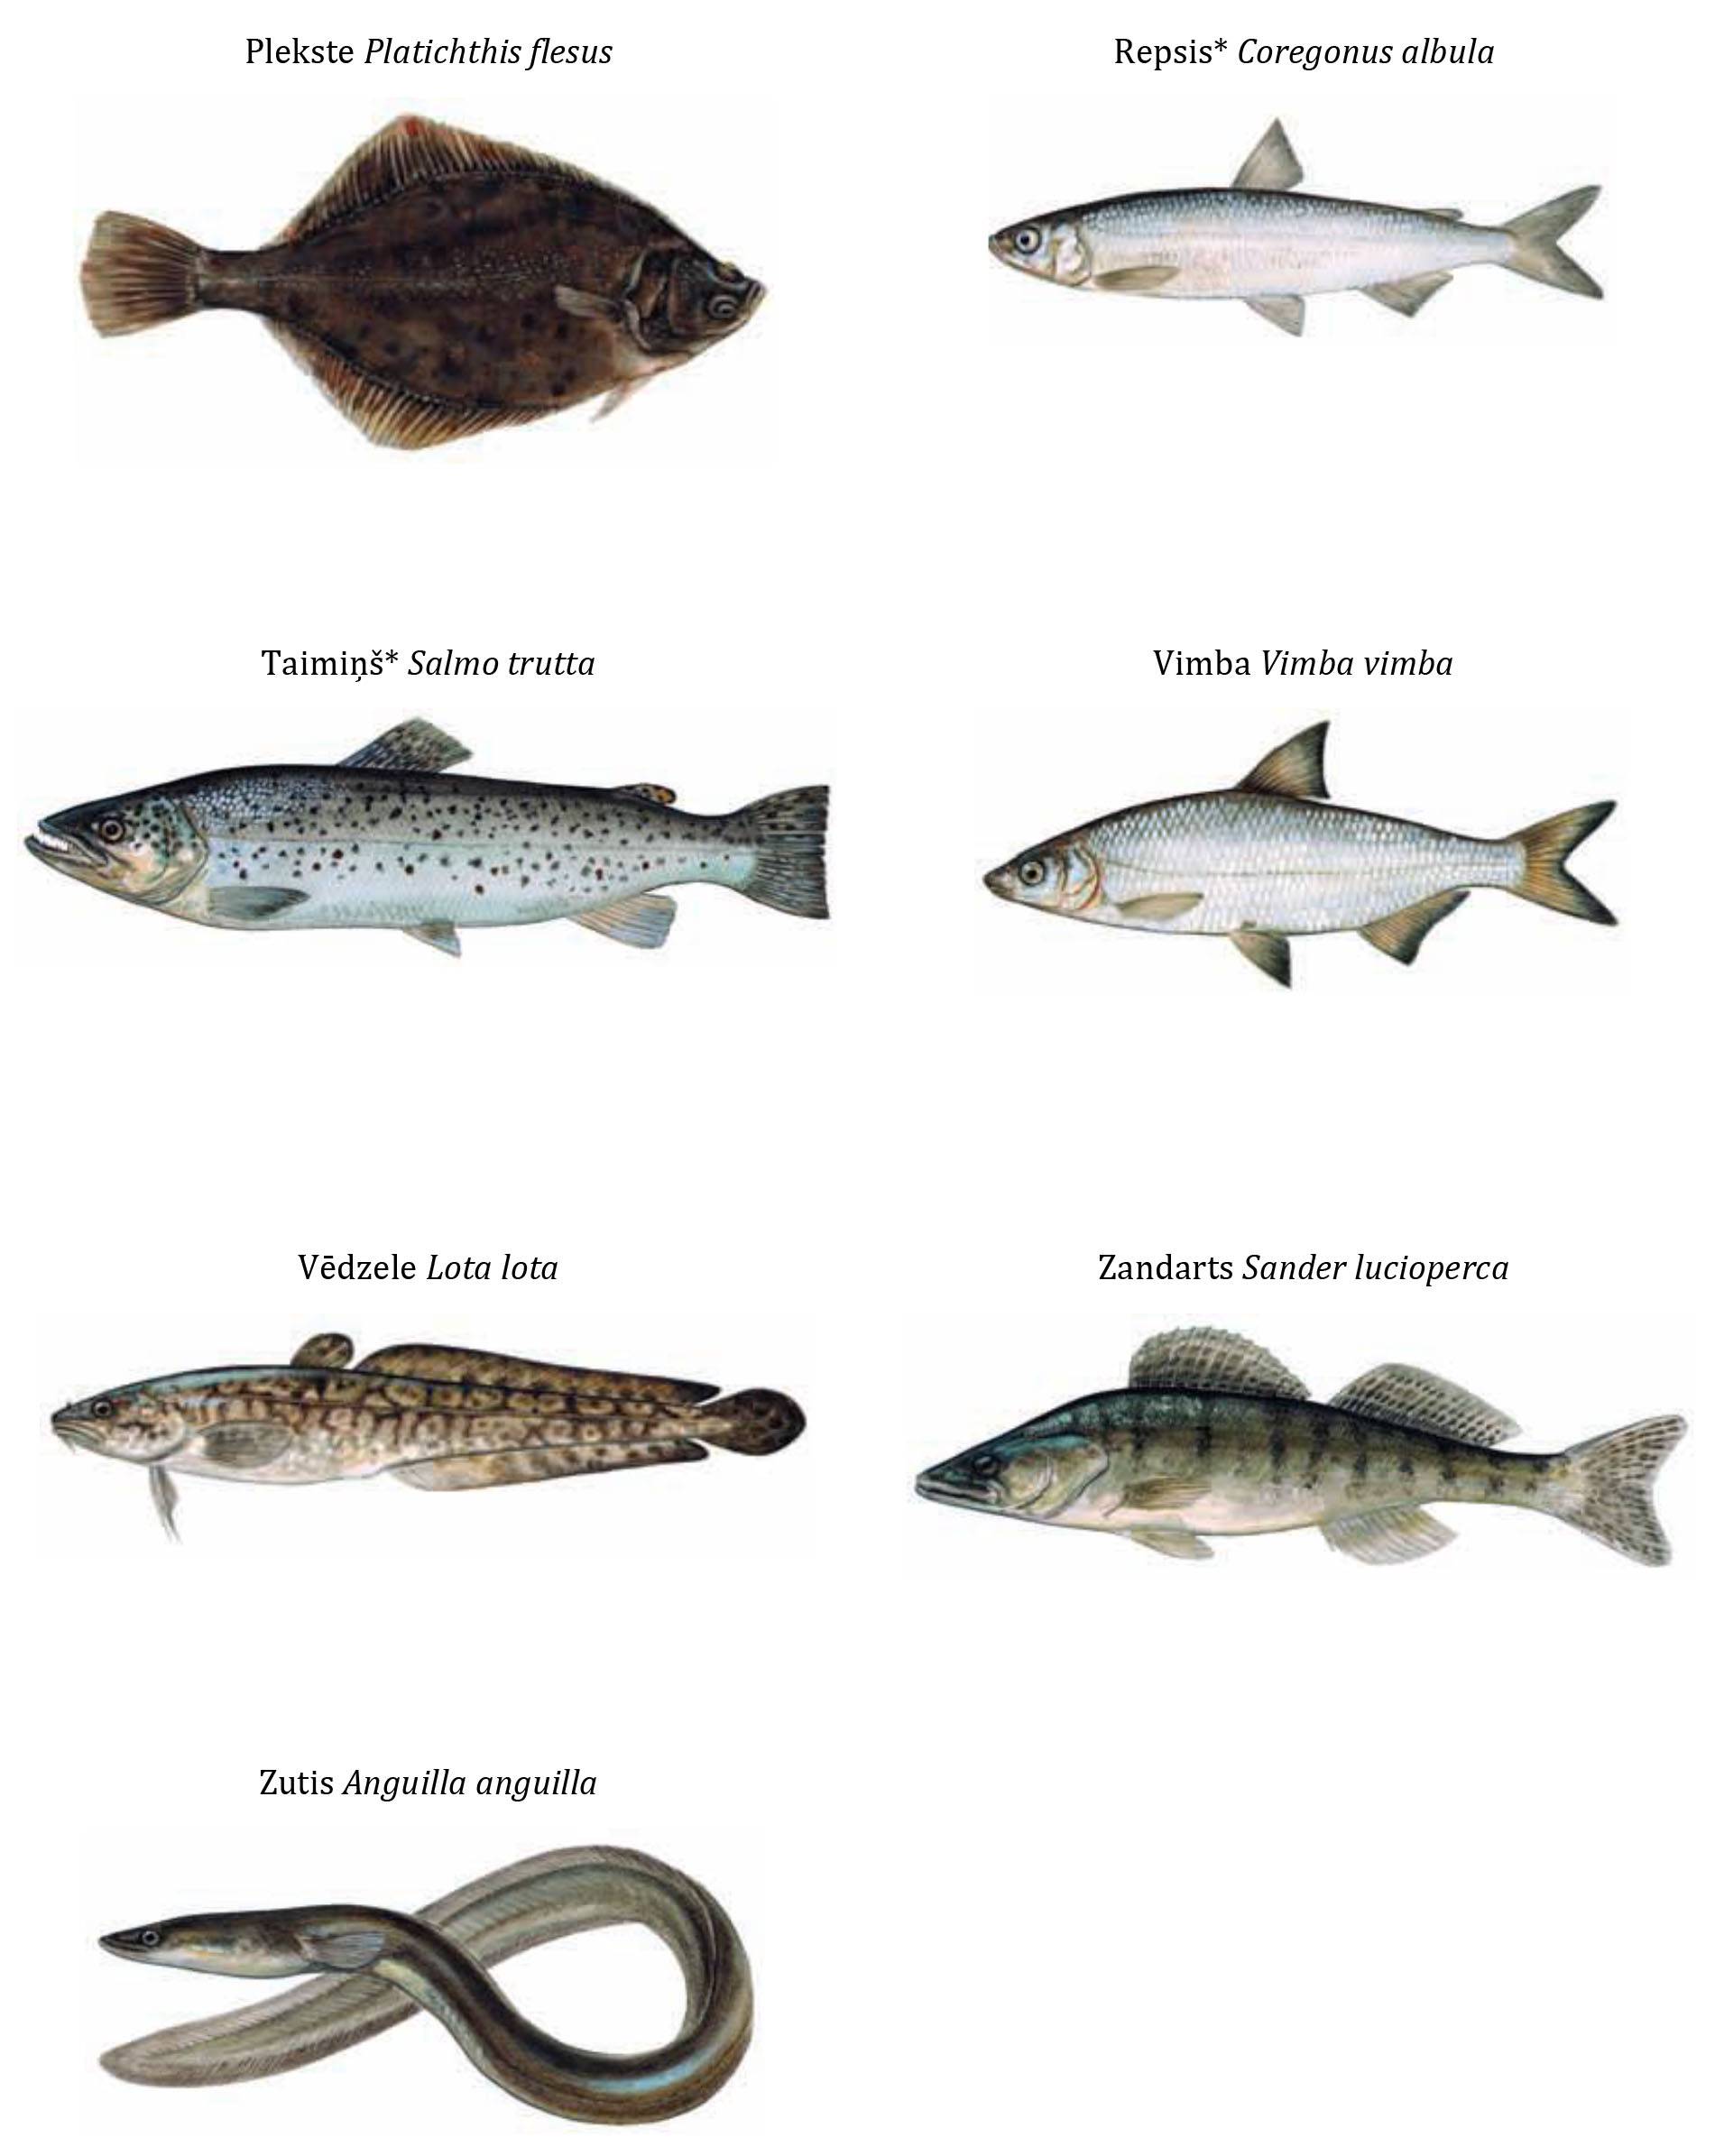 Салака польза и вред, изучаем полезные свойства рыбы